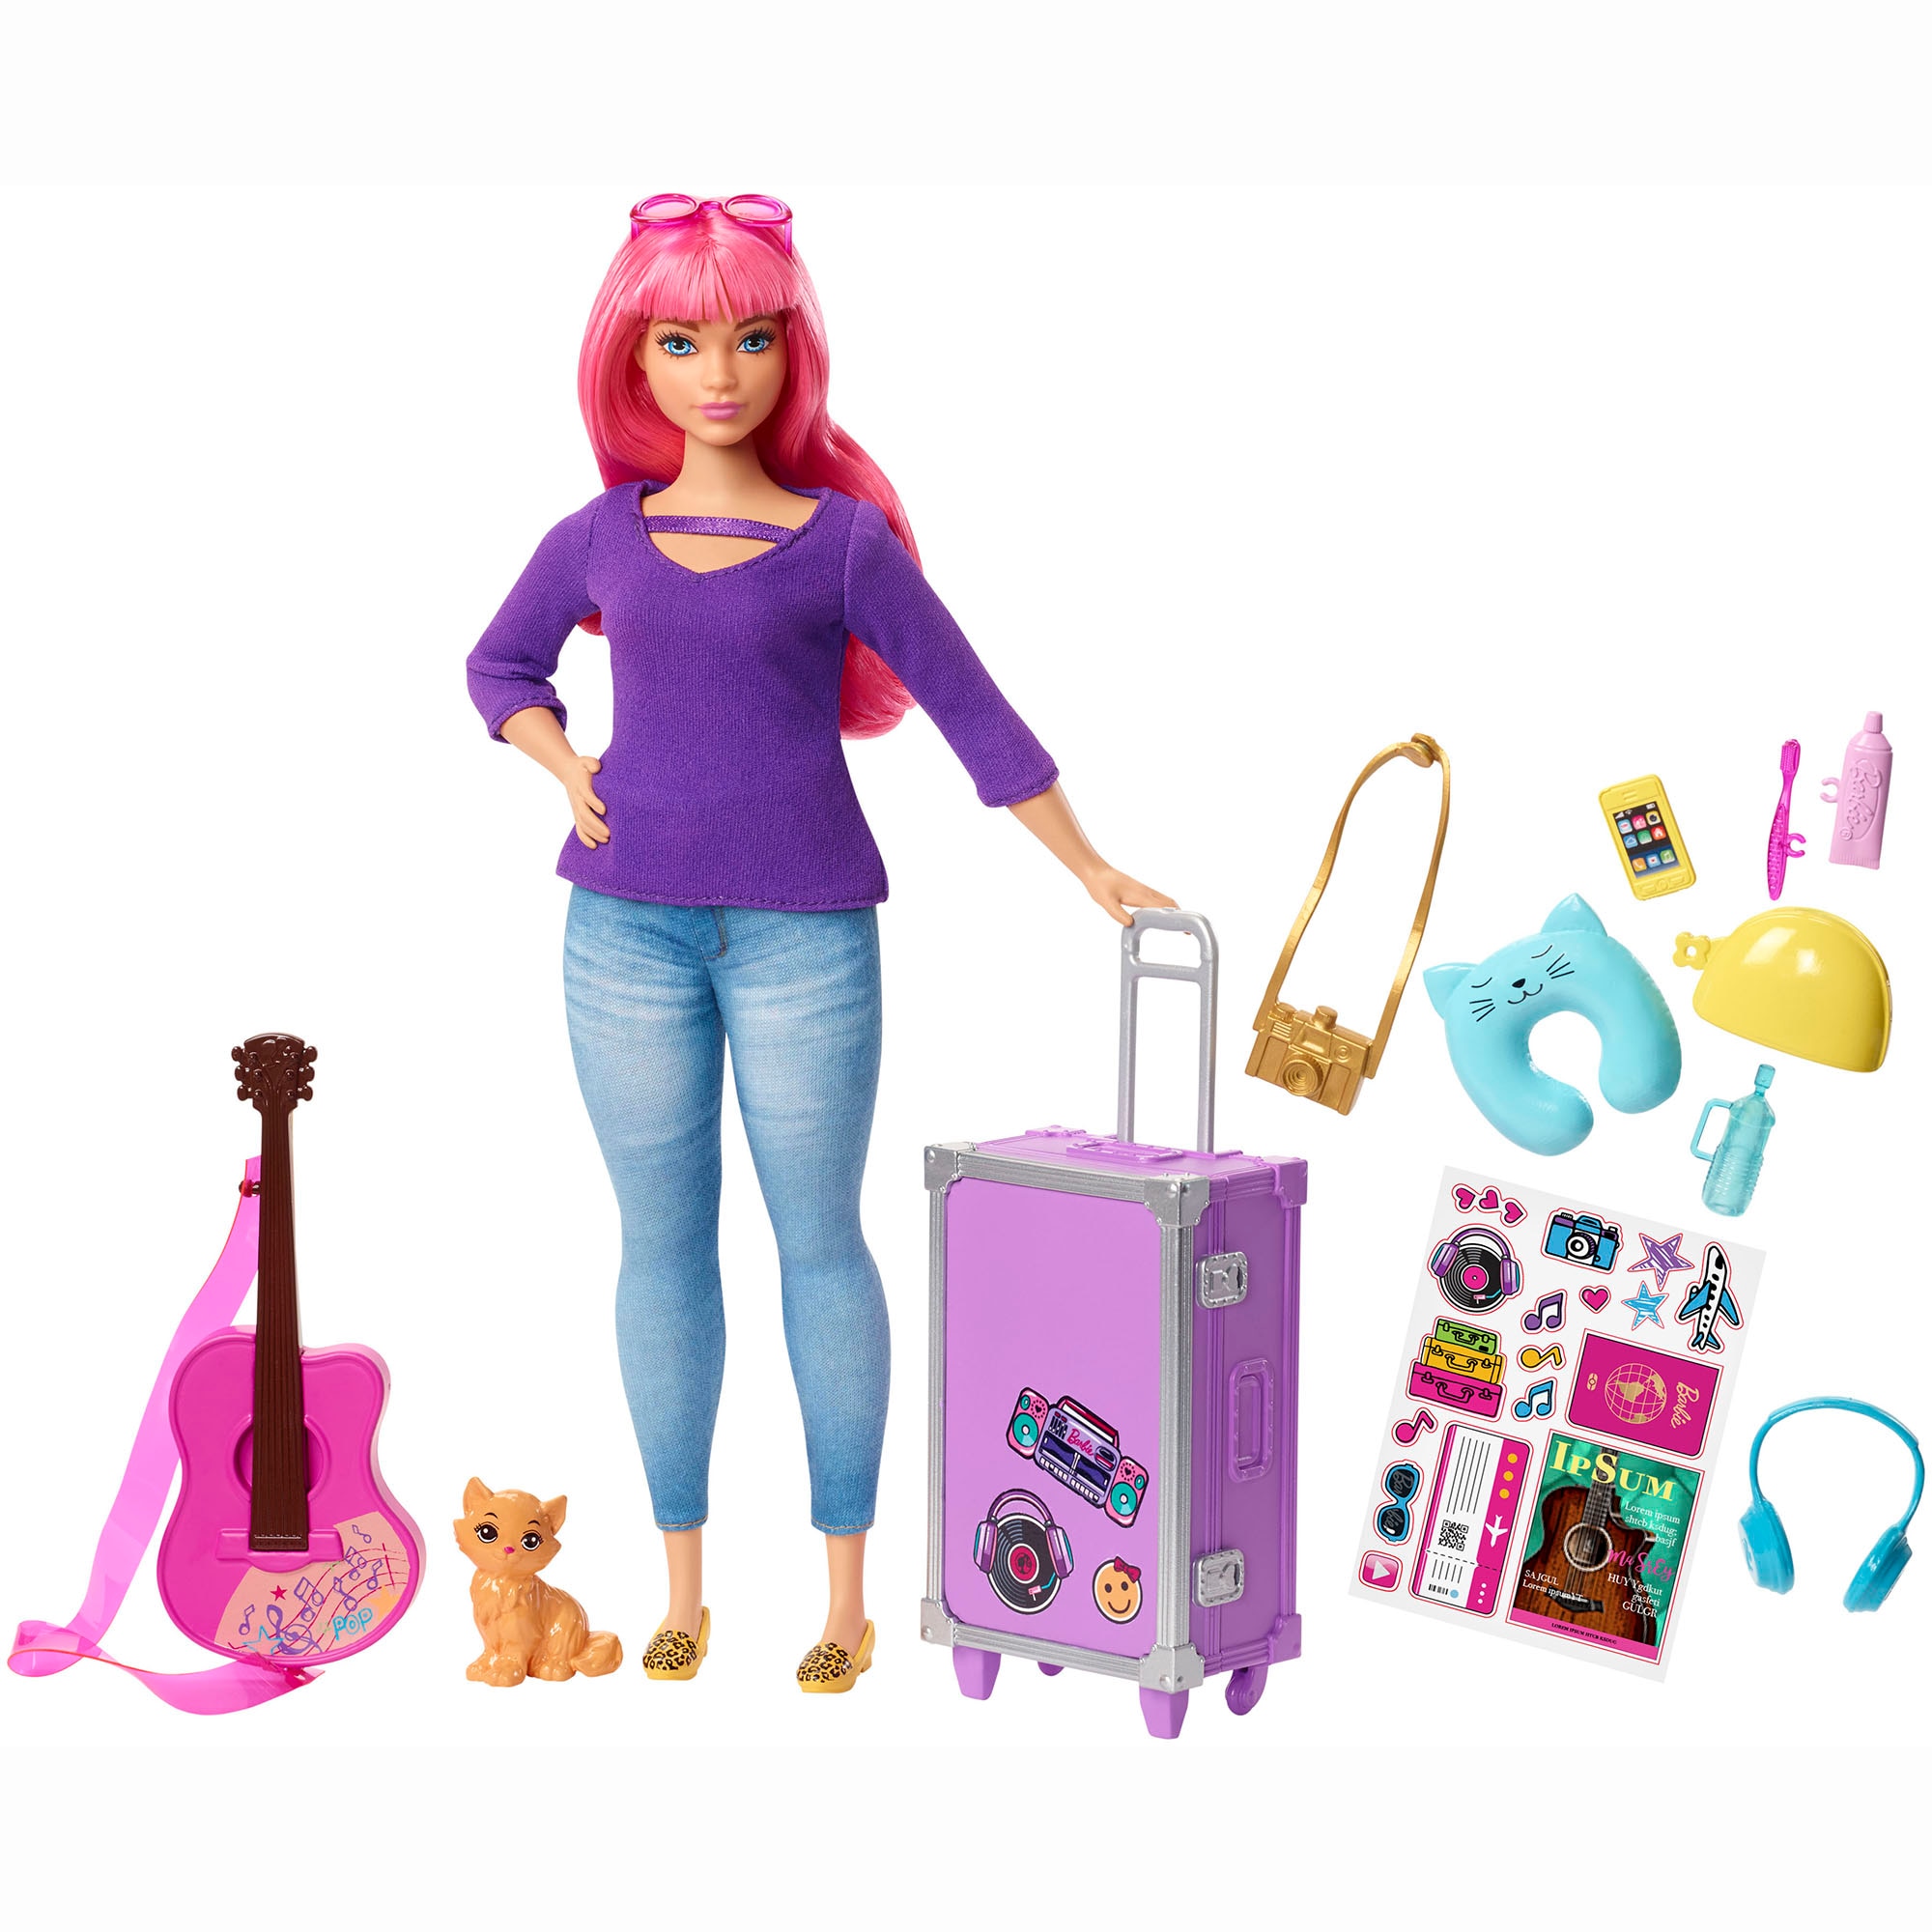 Можно игрушки куклы. Кукла Барби путешественница Дейзи. Кукла Барби Дейзи fwv26. Кукла Barbie Дейзи с аксессуарами, 28.5 см, fwv26. Игровой набор Barbie путешествия Дейзи fwv26.